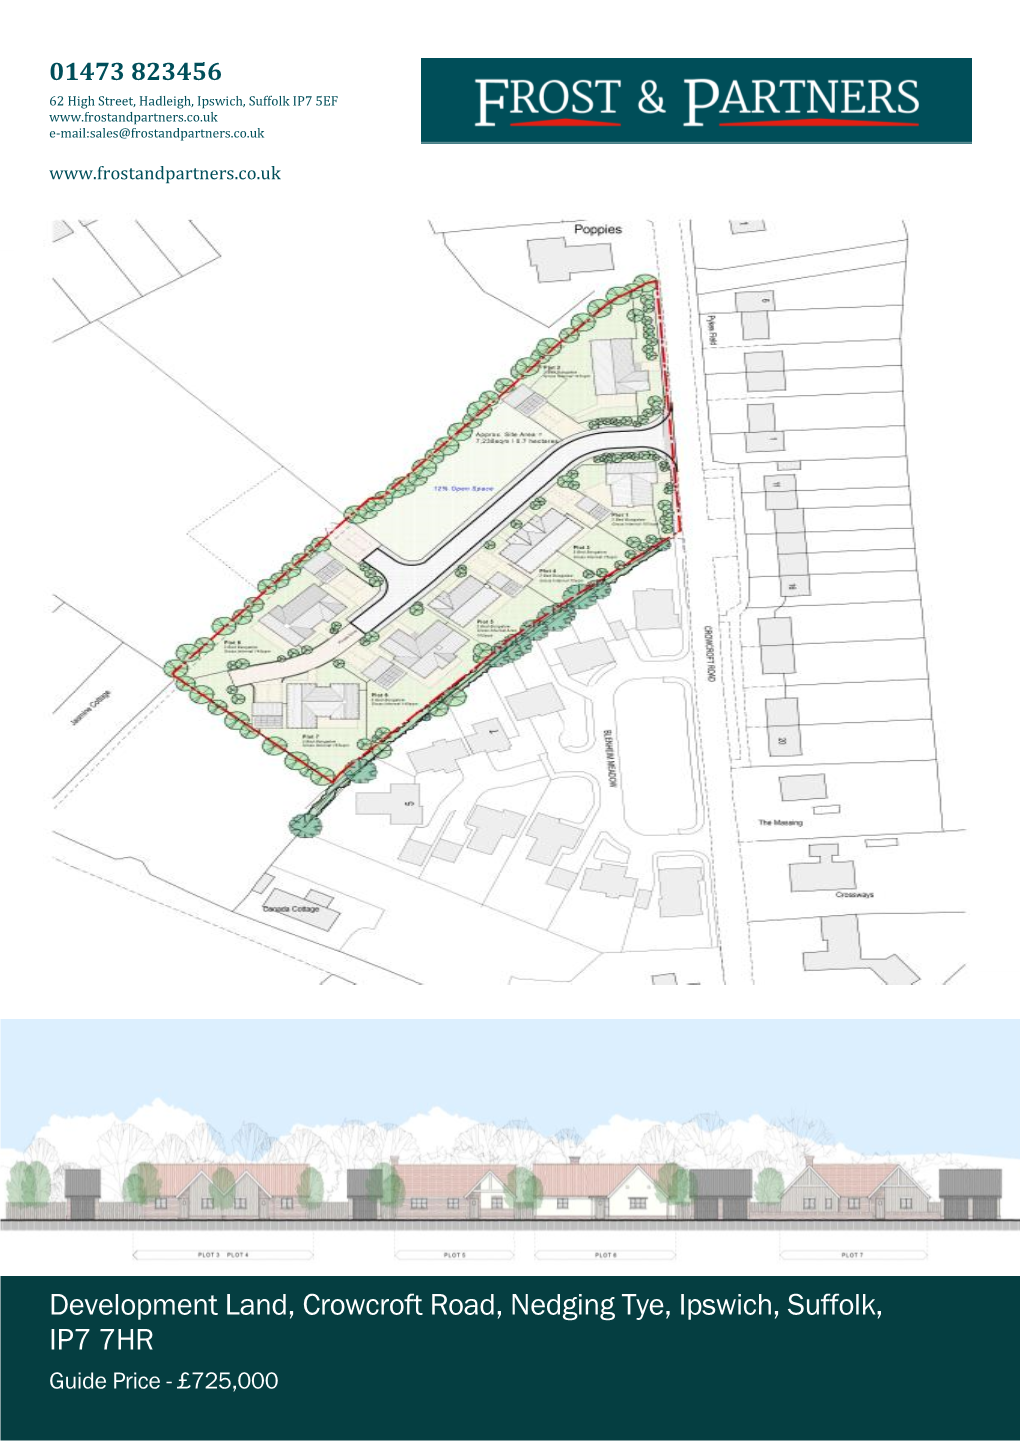 Development Land, Crowcroft Road, Nedging Tye, Ipswich, Suffolk, IP7 7HR Guide Price - £725,000